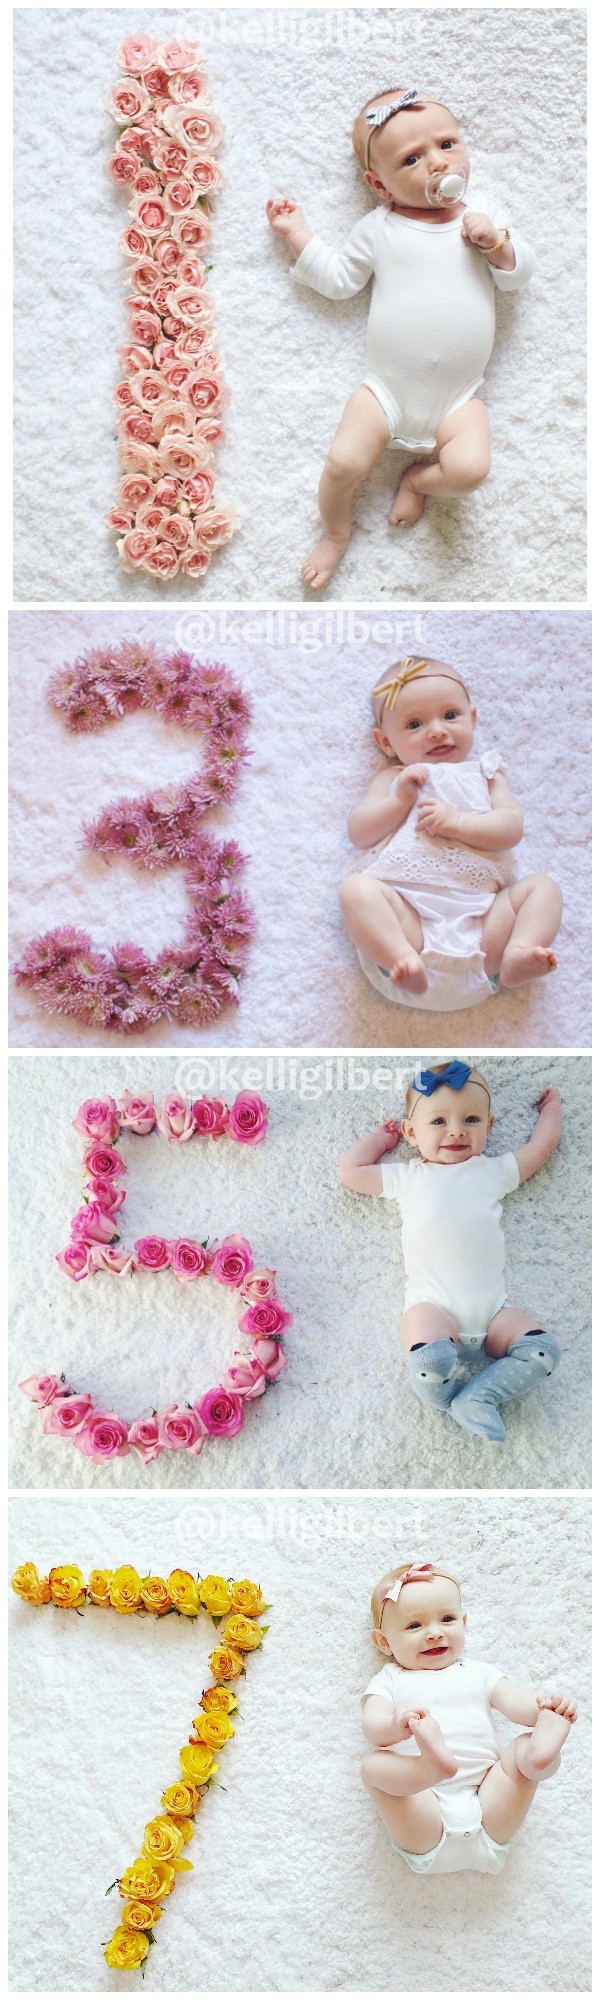 Ideas para fotos mensuales de bebés con pétalos de flores.